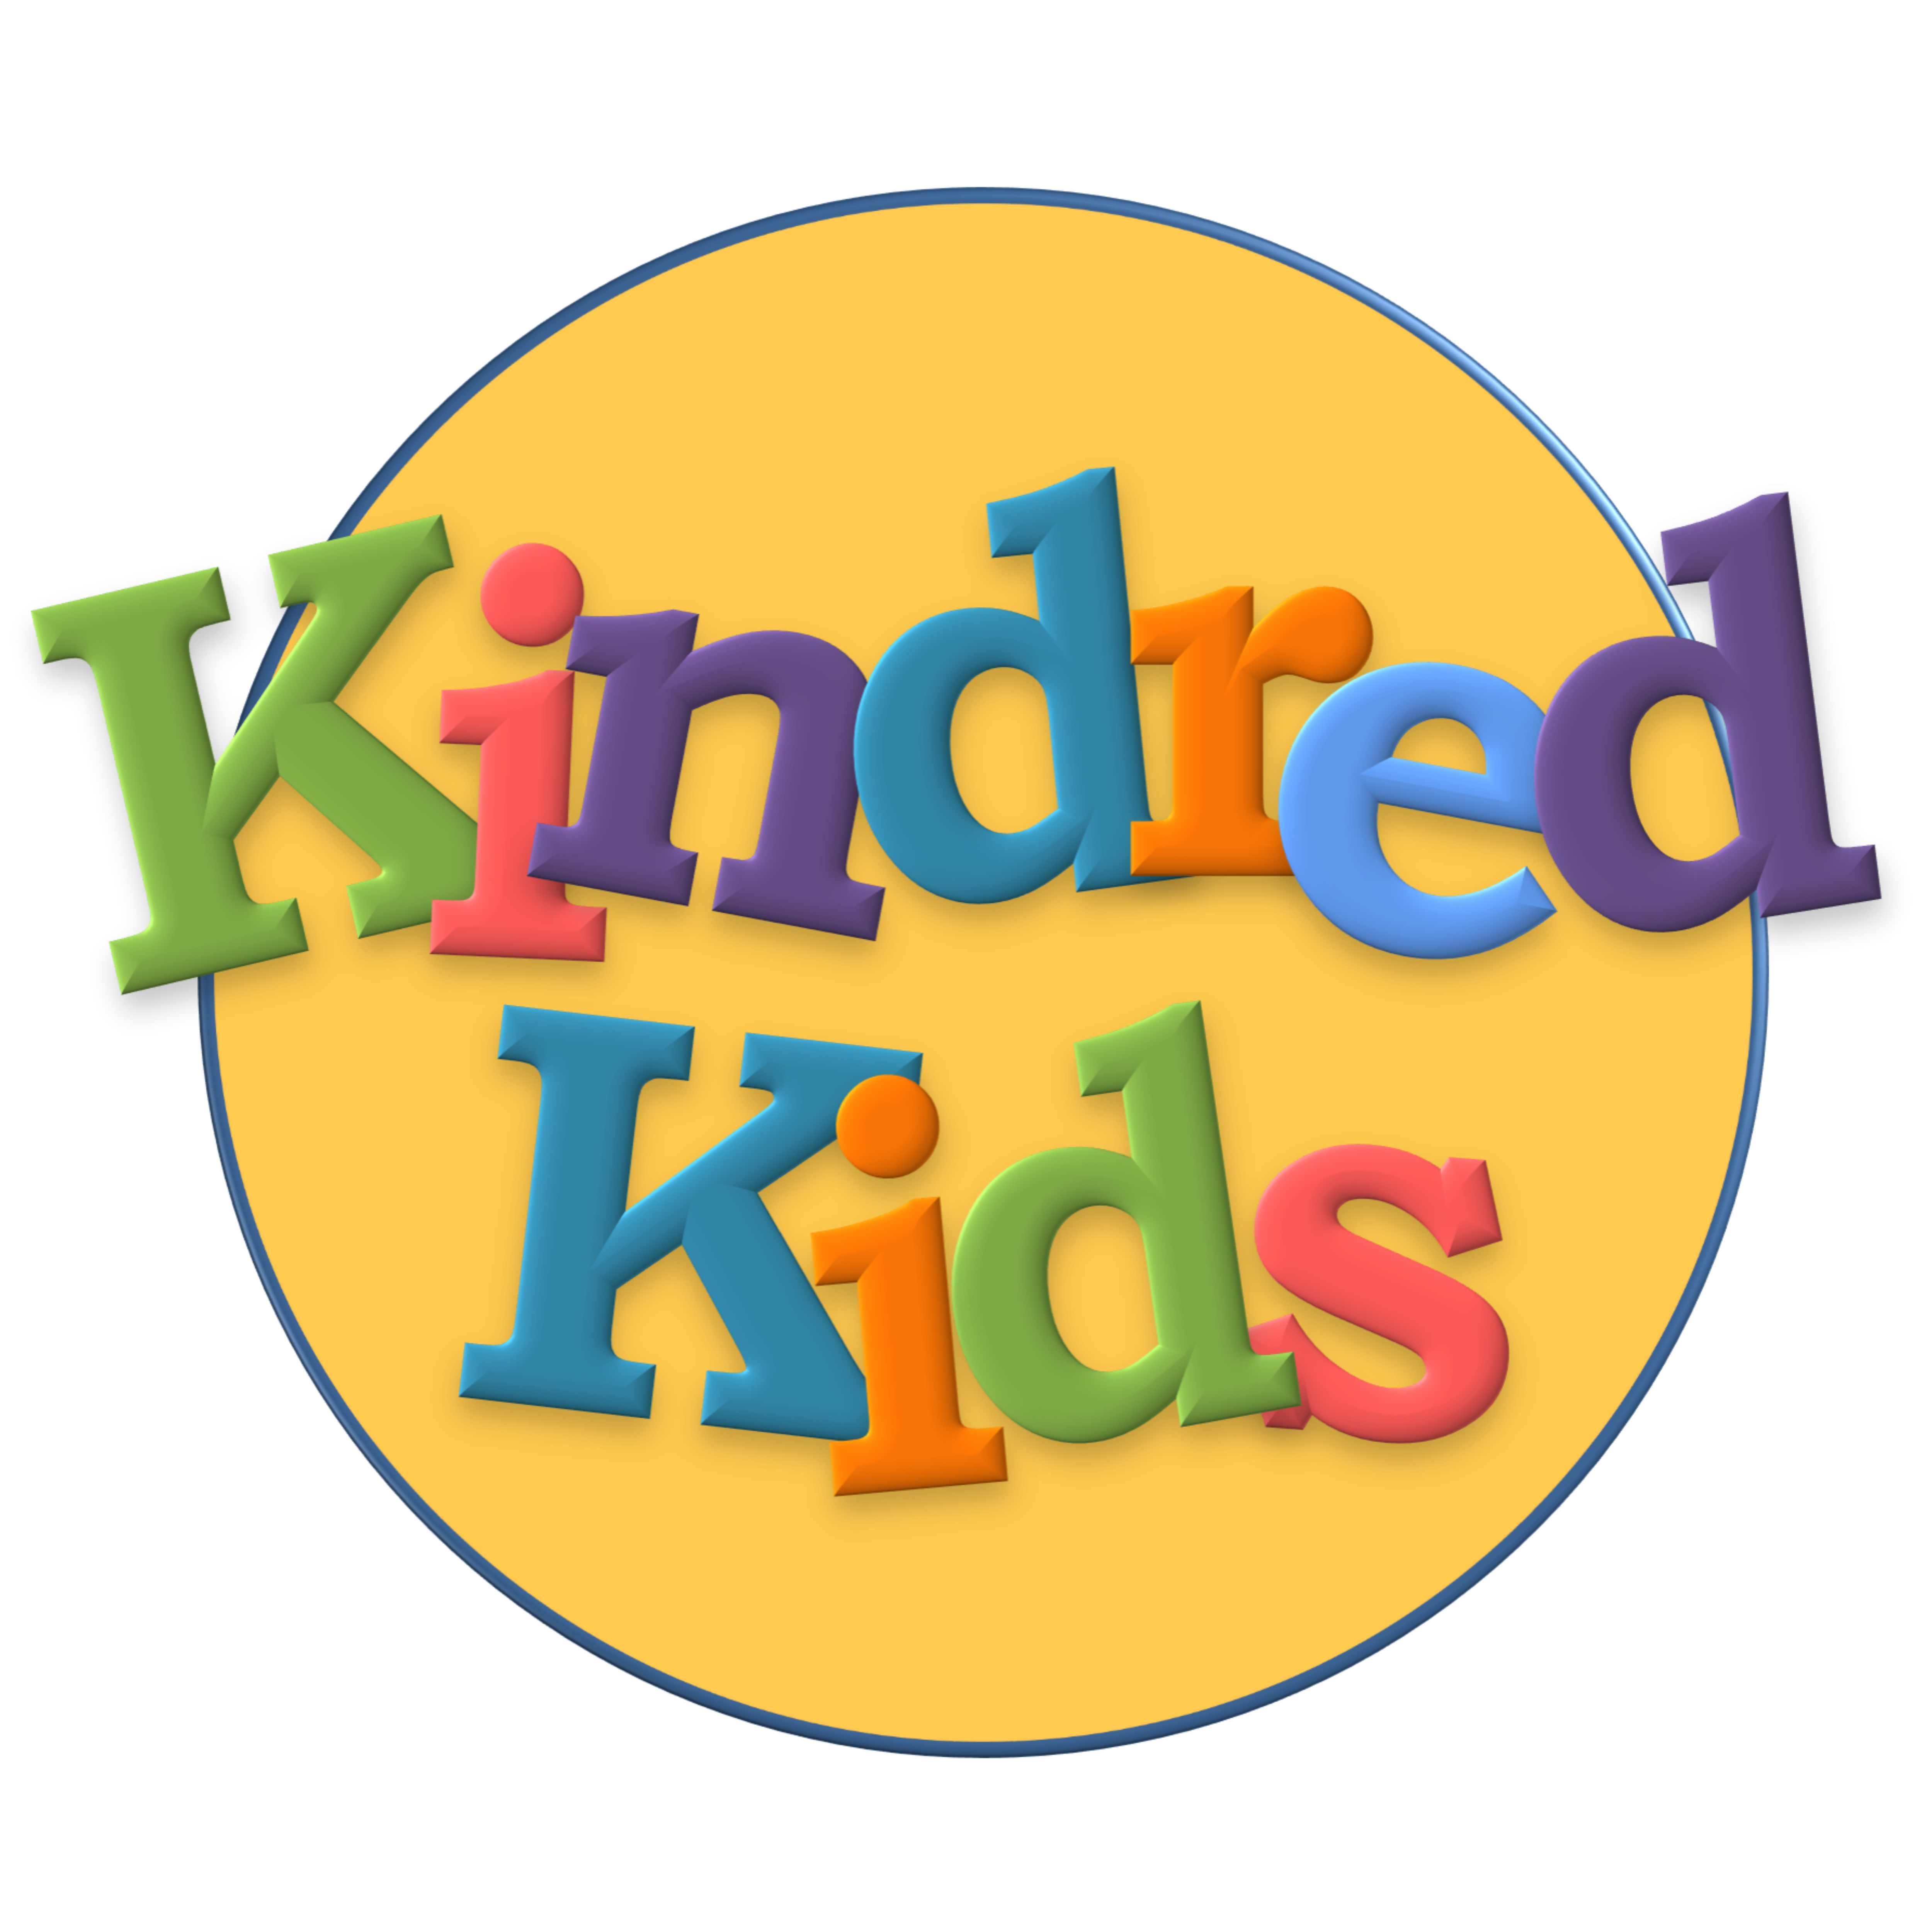 Kindred Kids